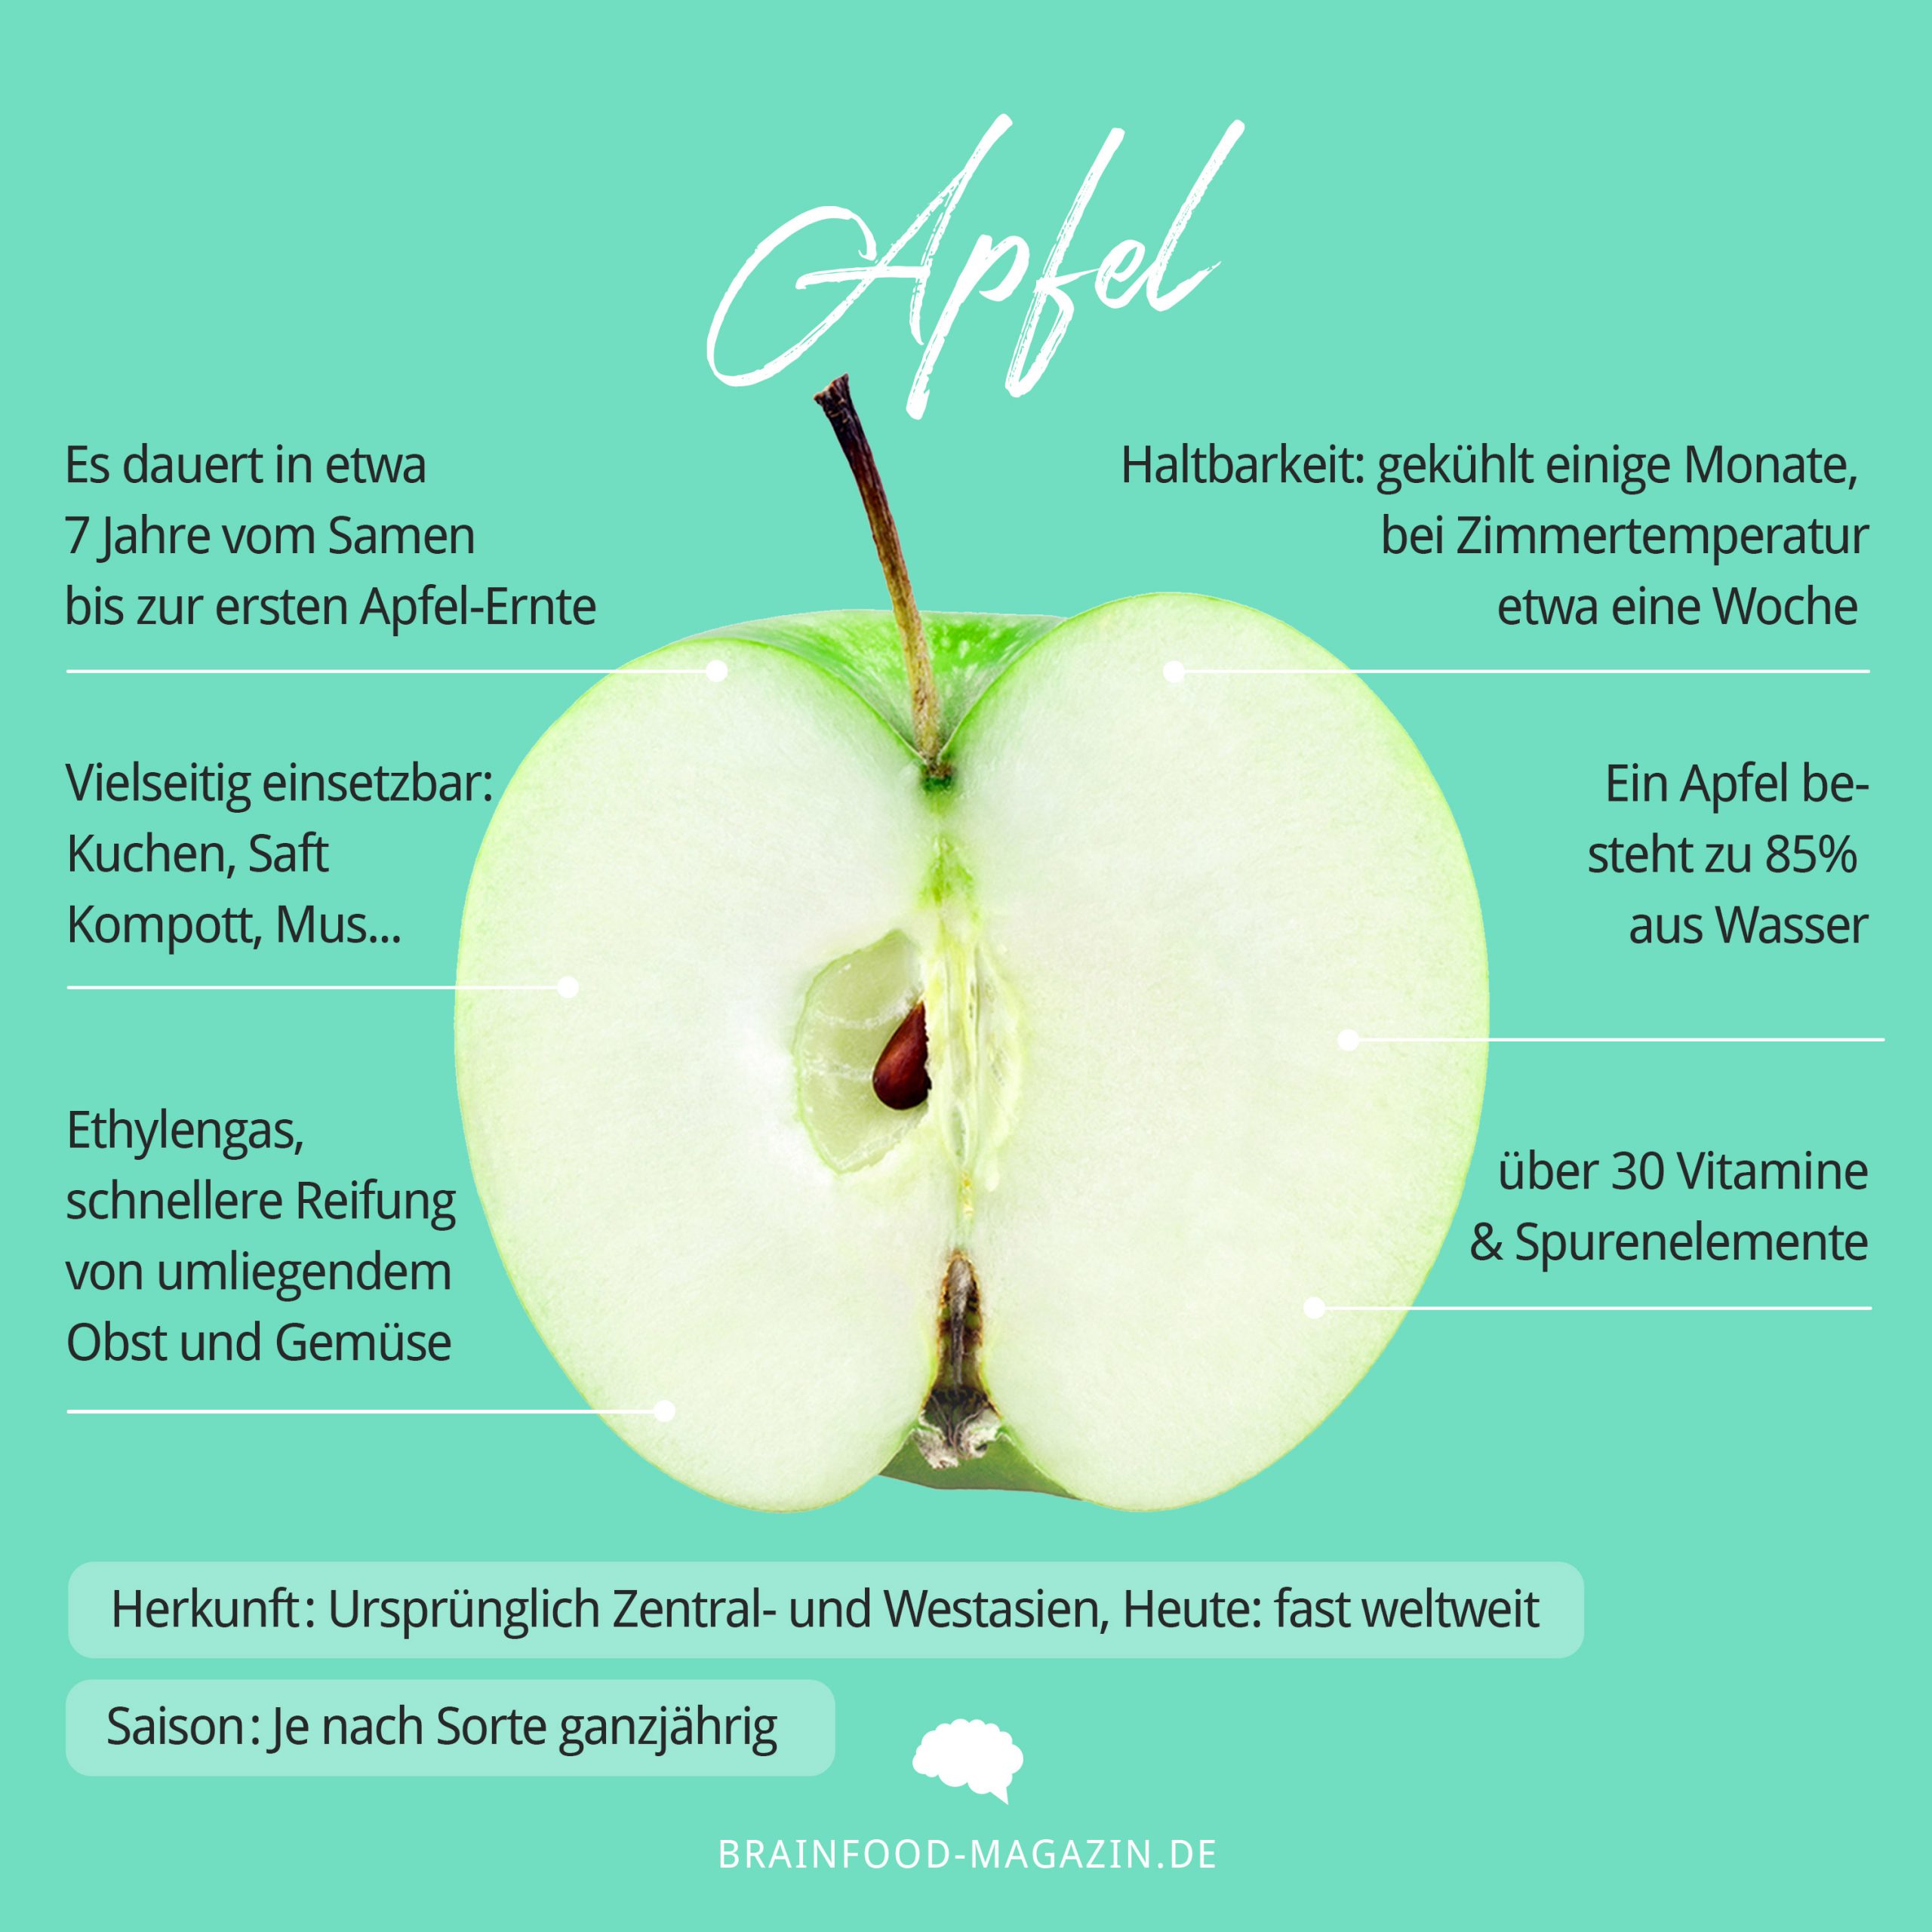 Apfel Nährwerte, Aufbewahrung, Haltbarkeit und Rezepte! Wie gesund ist der Apfel?